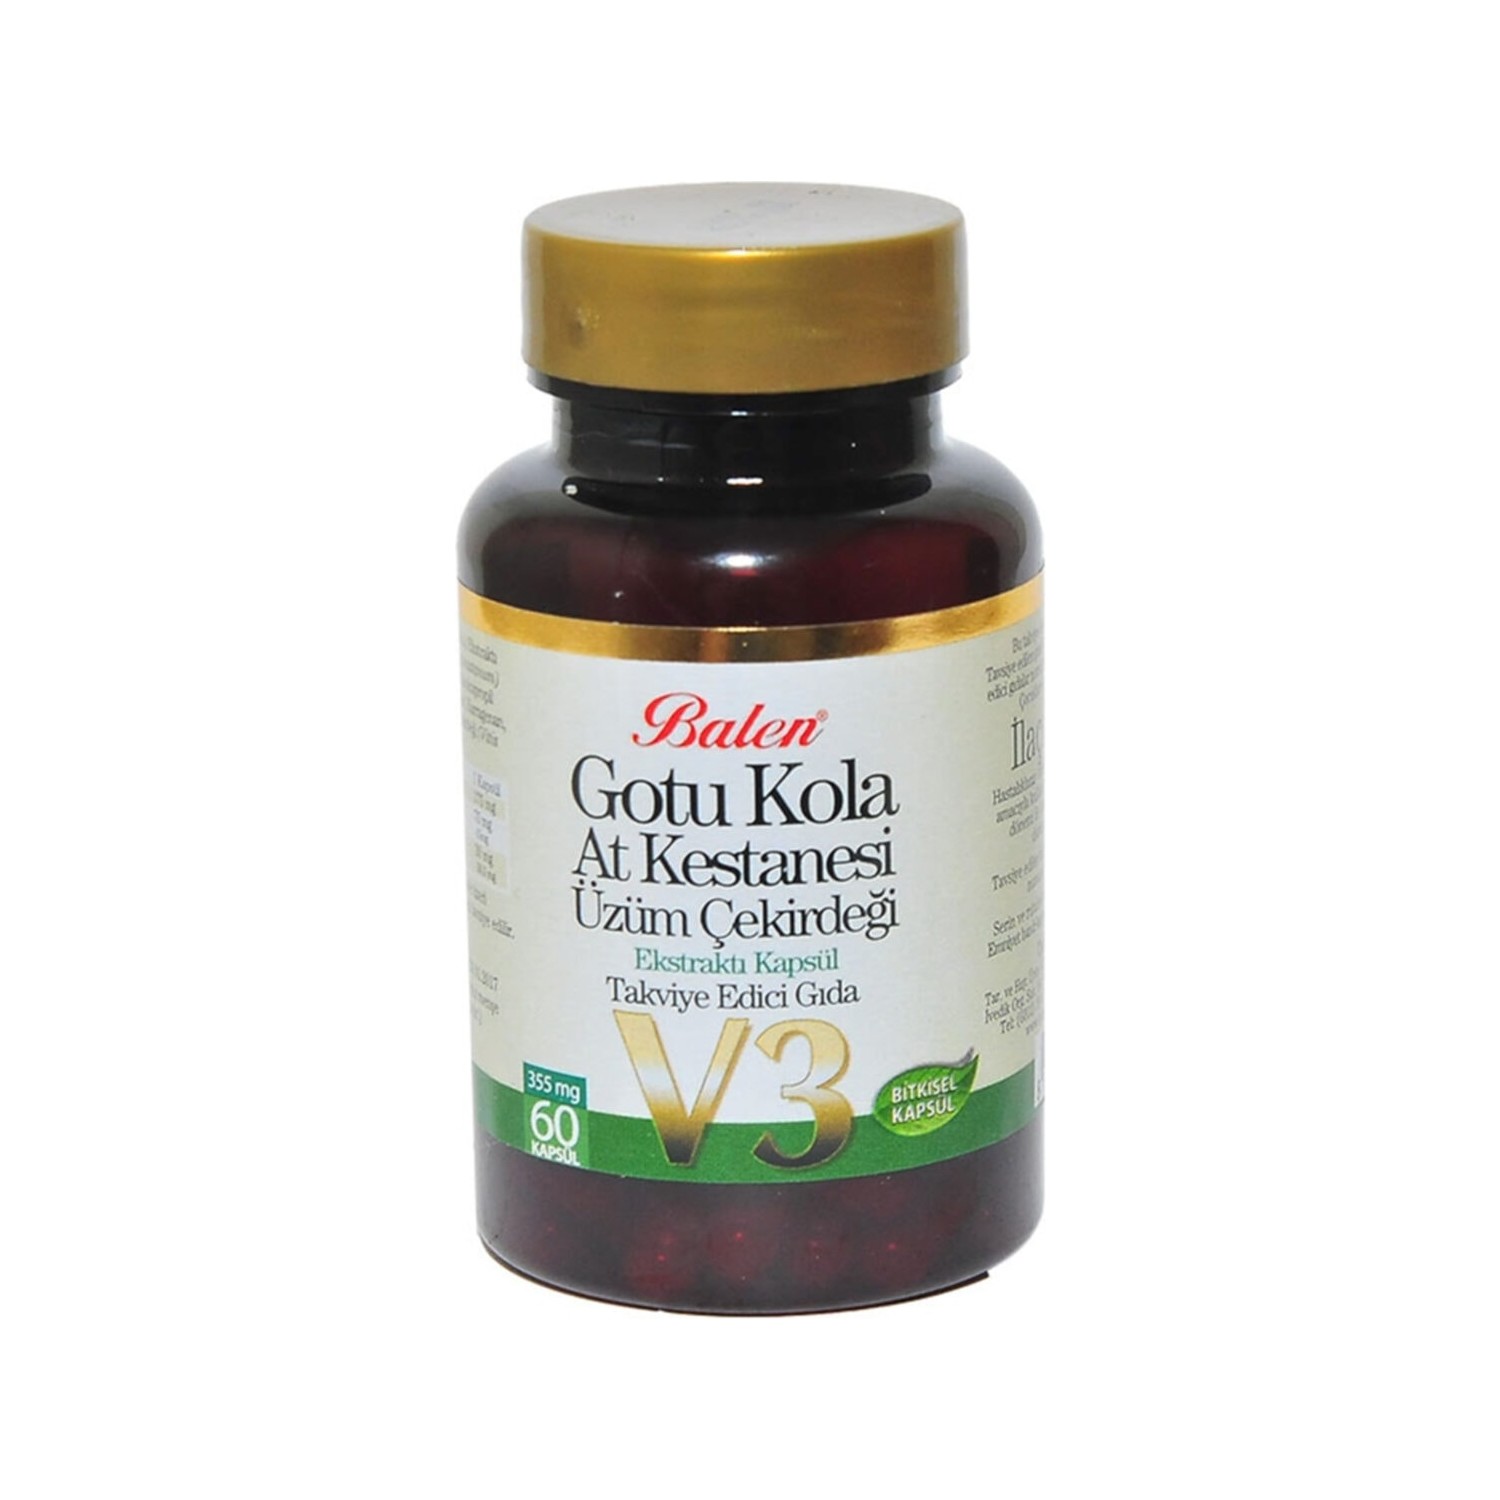 Активная добавка Balen Gotu Kola Horse Chestnut Grape Seed Extract V3, 60 капсул, 355 мг mrm nutrition экстракт виноградных косточек 100 веганских капсул